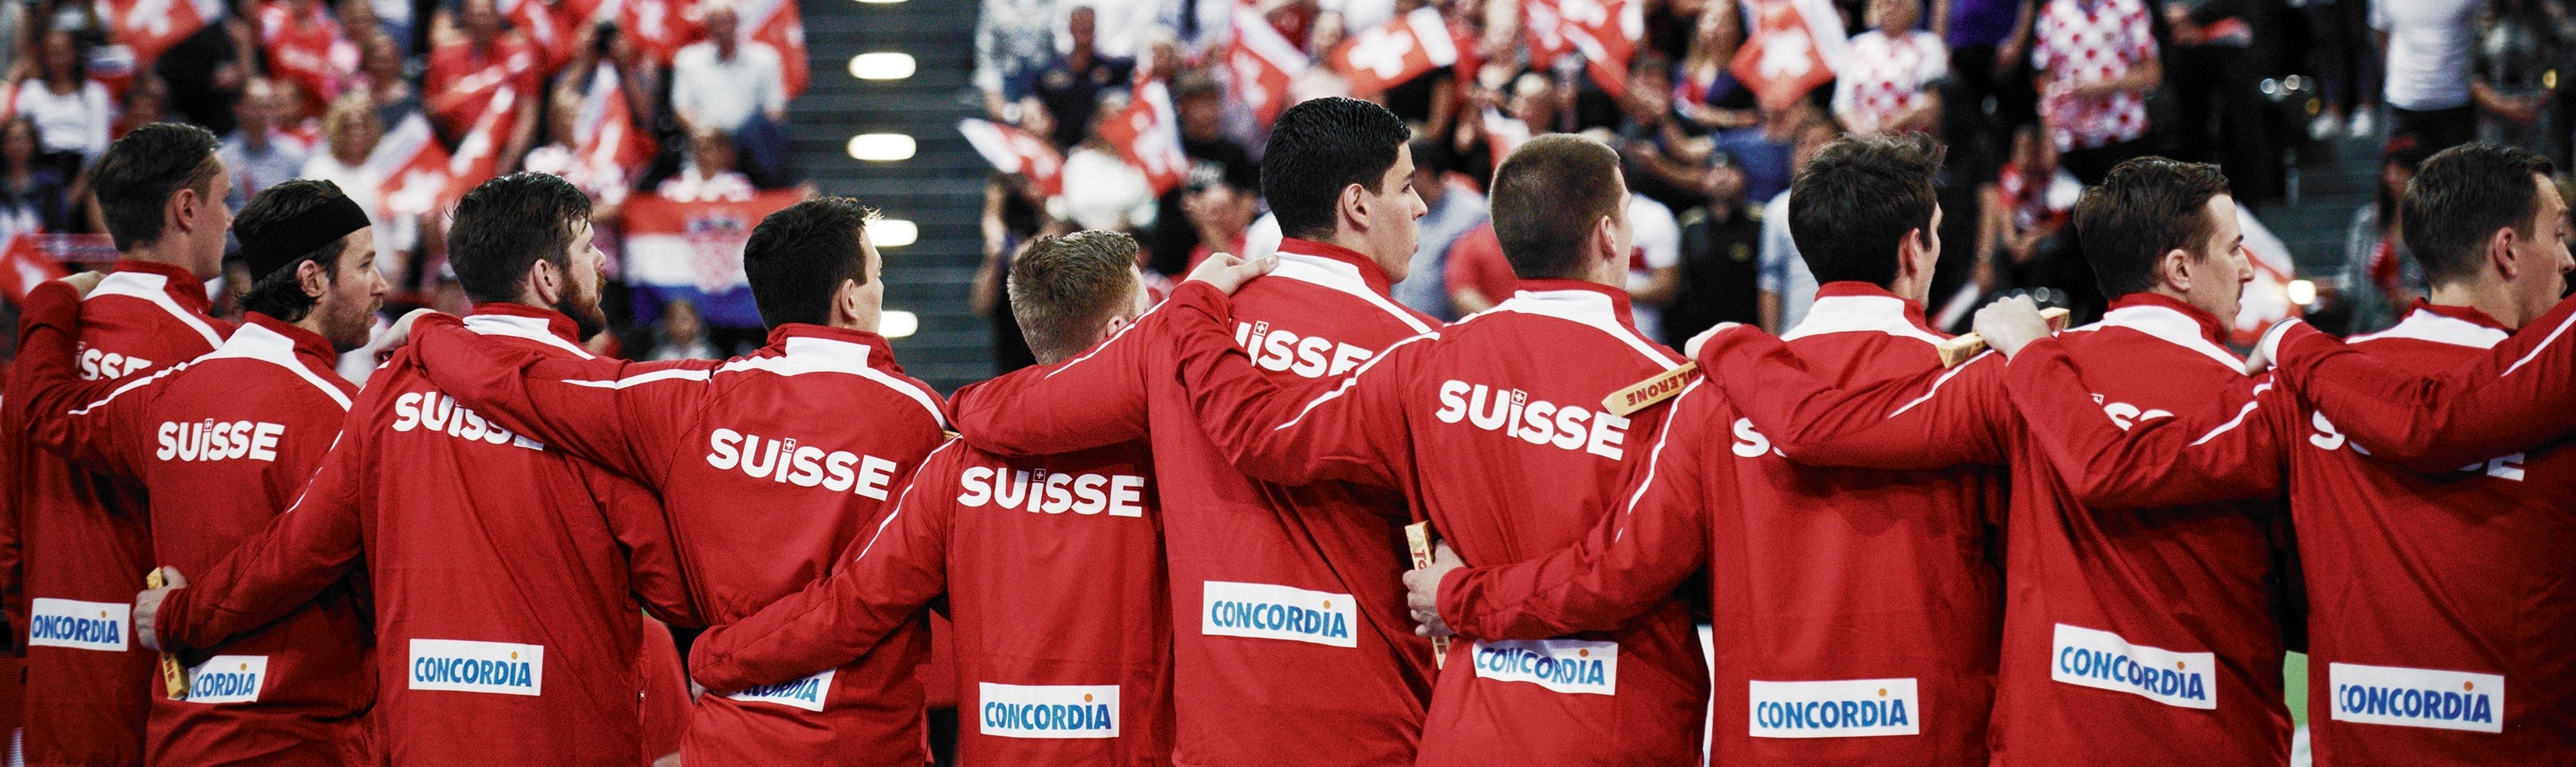 CONCORDIA ist der offizielle Kranken- und Unfallversicherer des Schweizerischen Handball-Verbandes